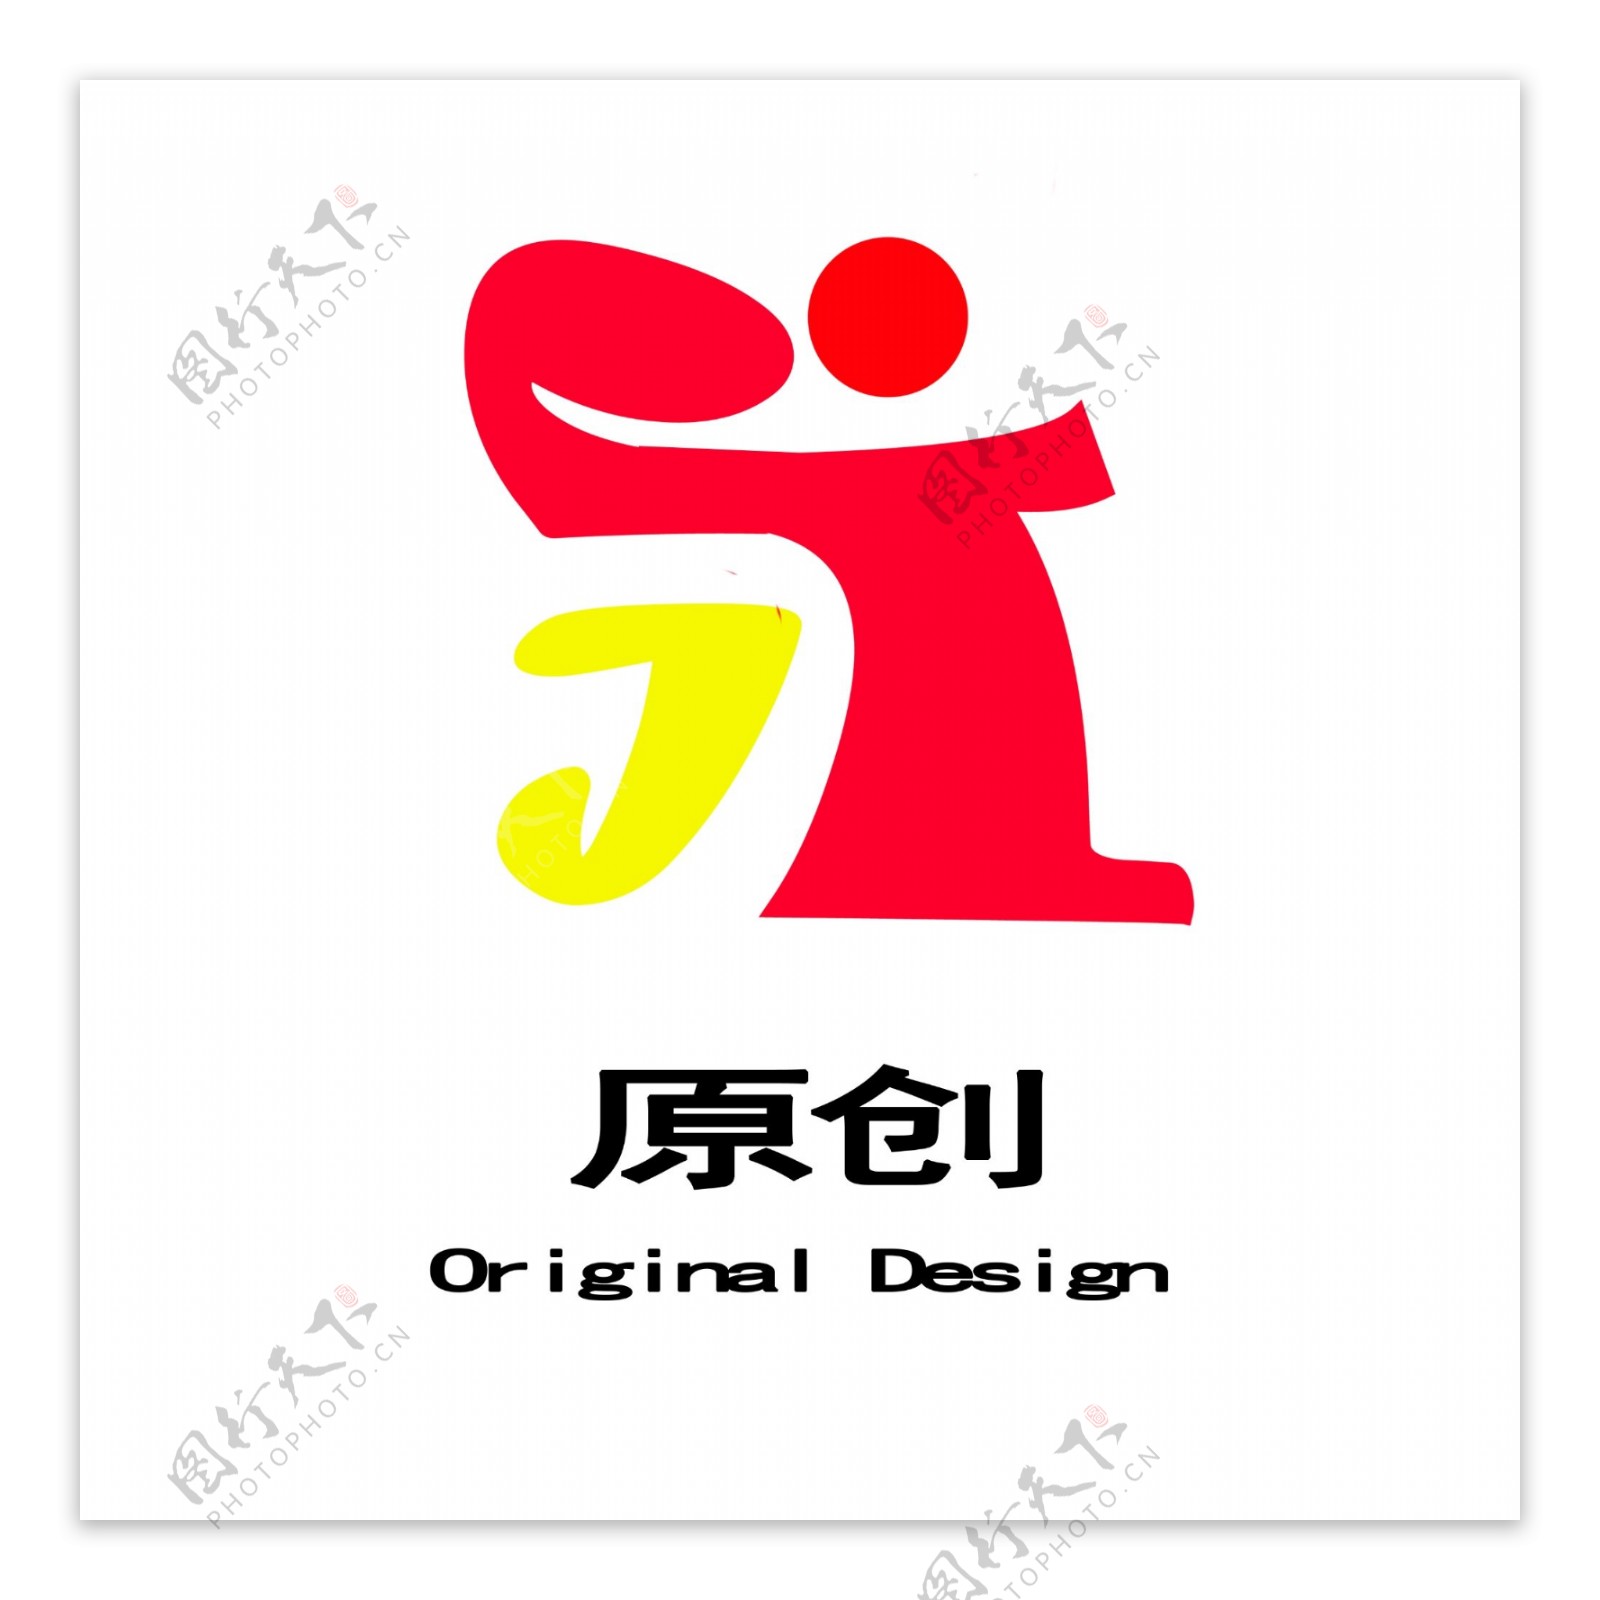 标志logo企业图片